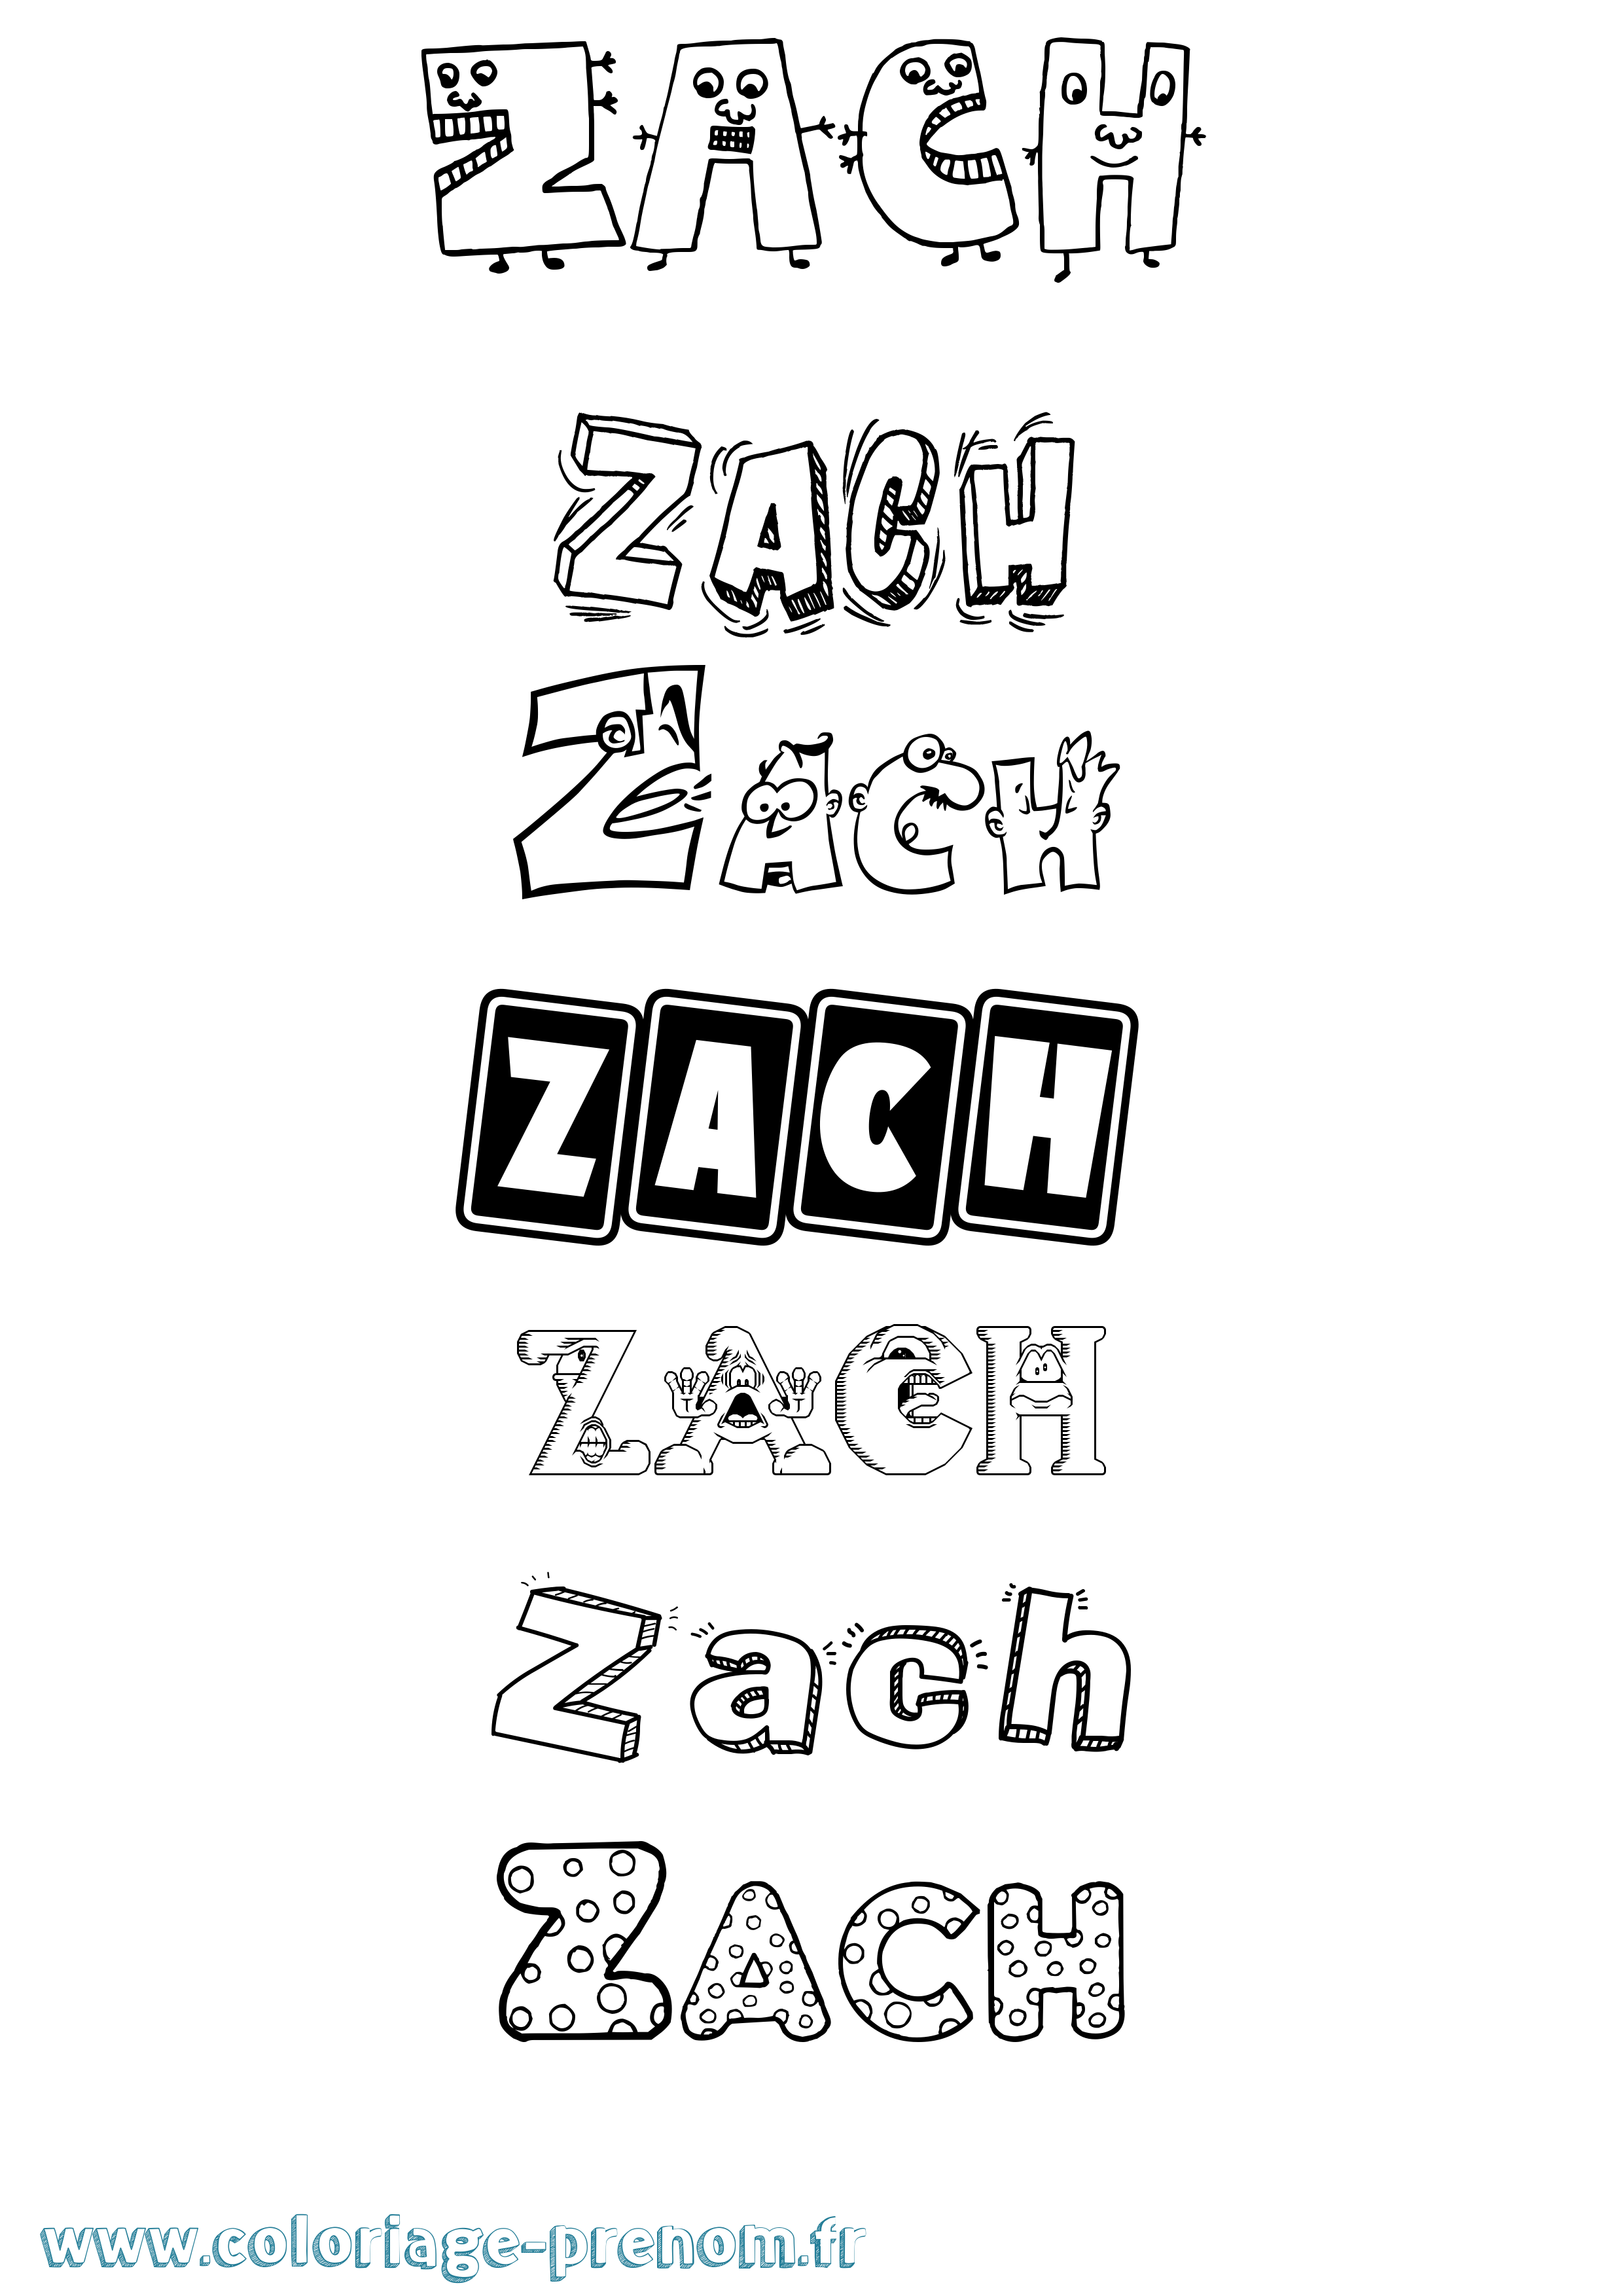 Coloriage prénom Zach Fun